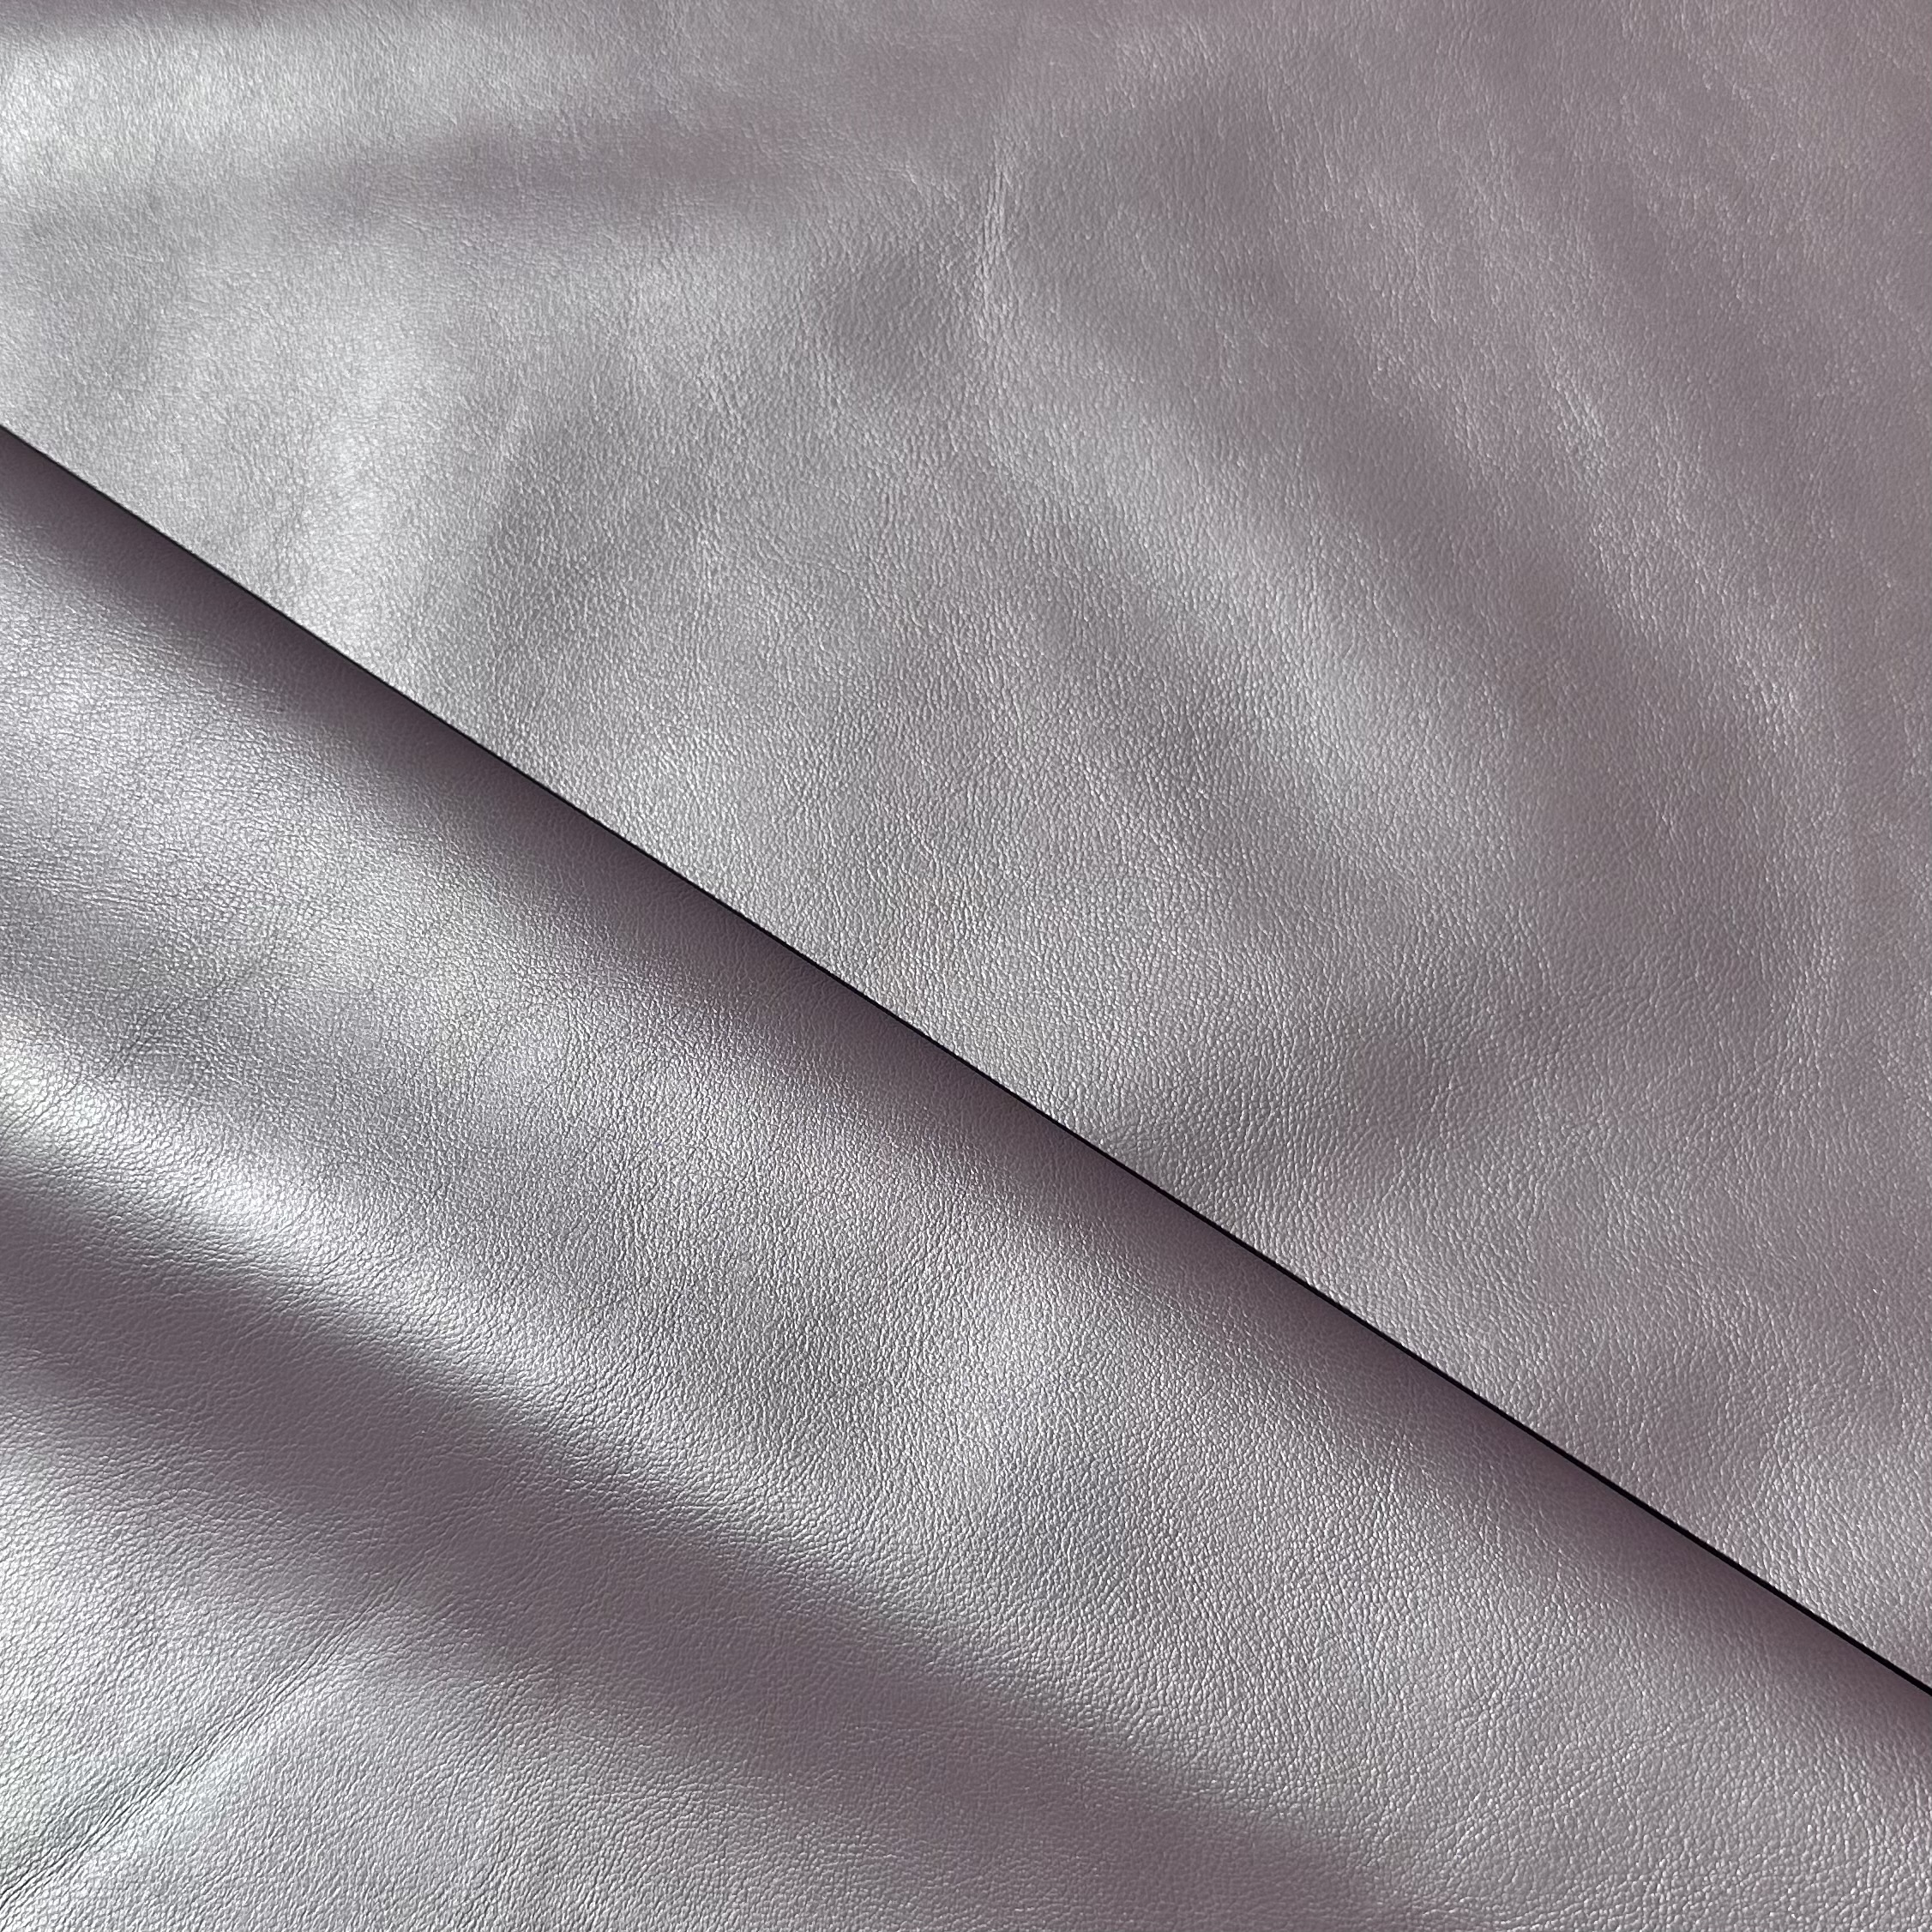 Tela de vestir elástica resistente, color blanco, por metro